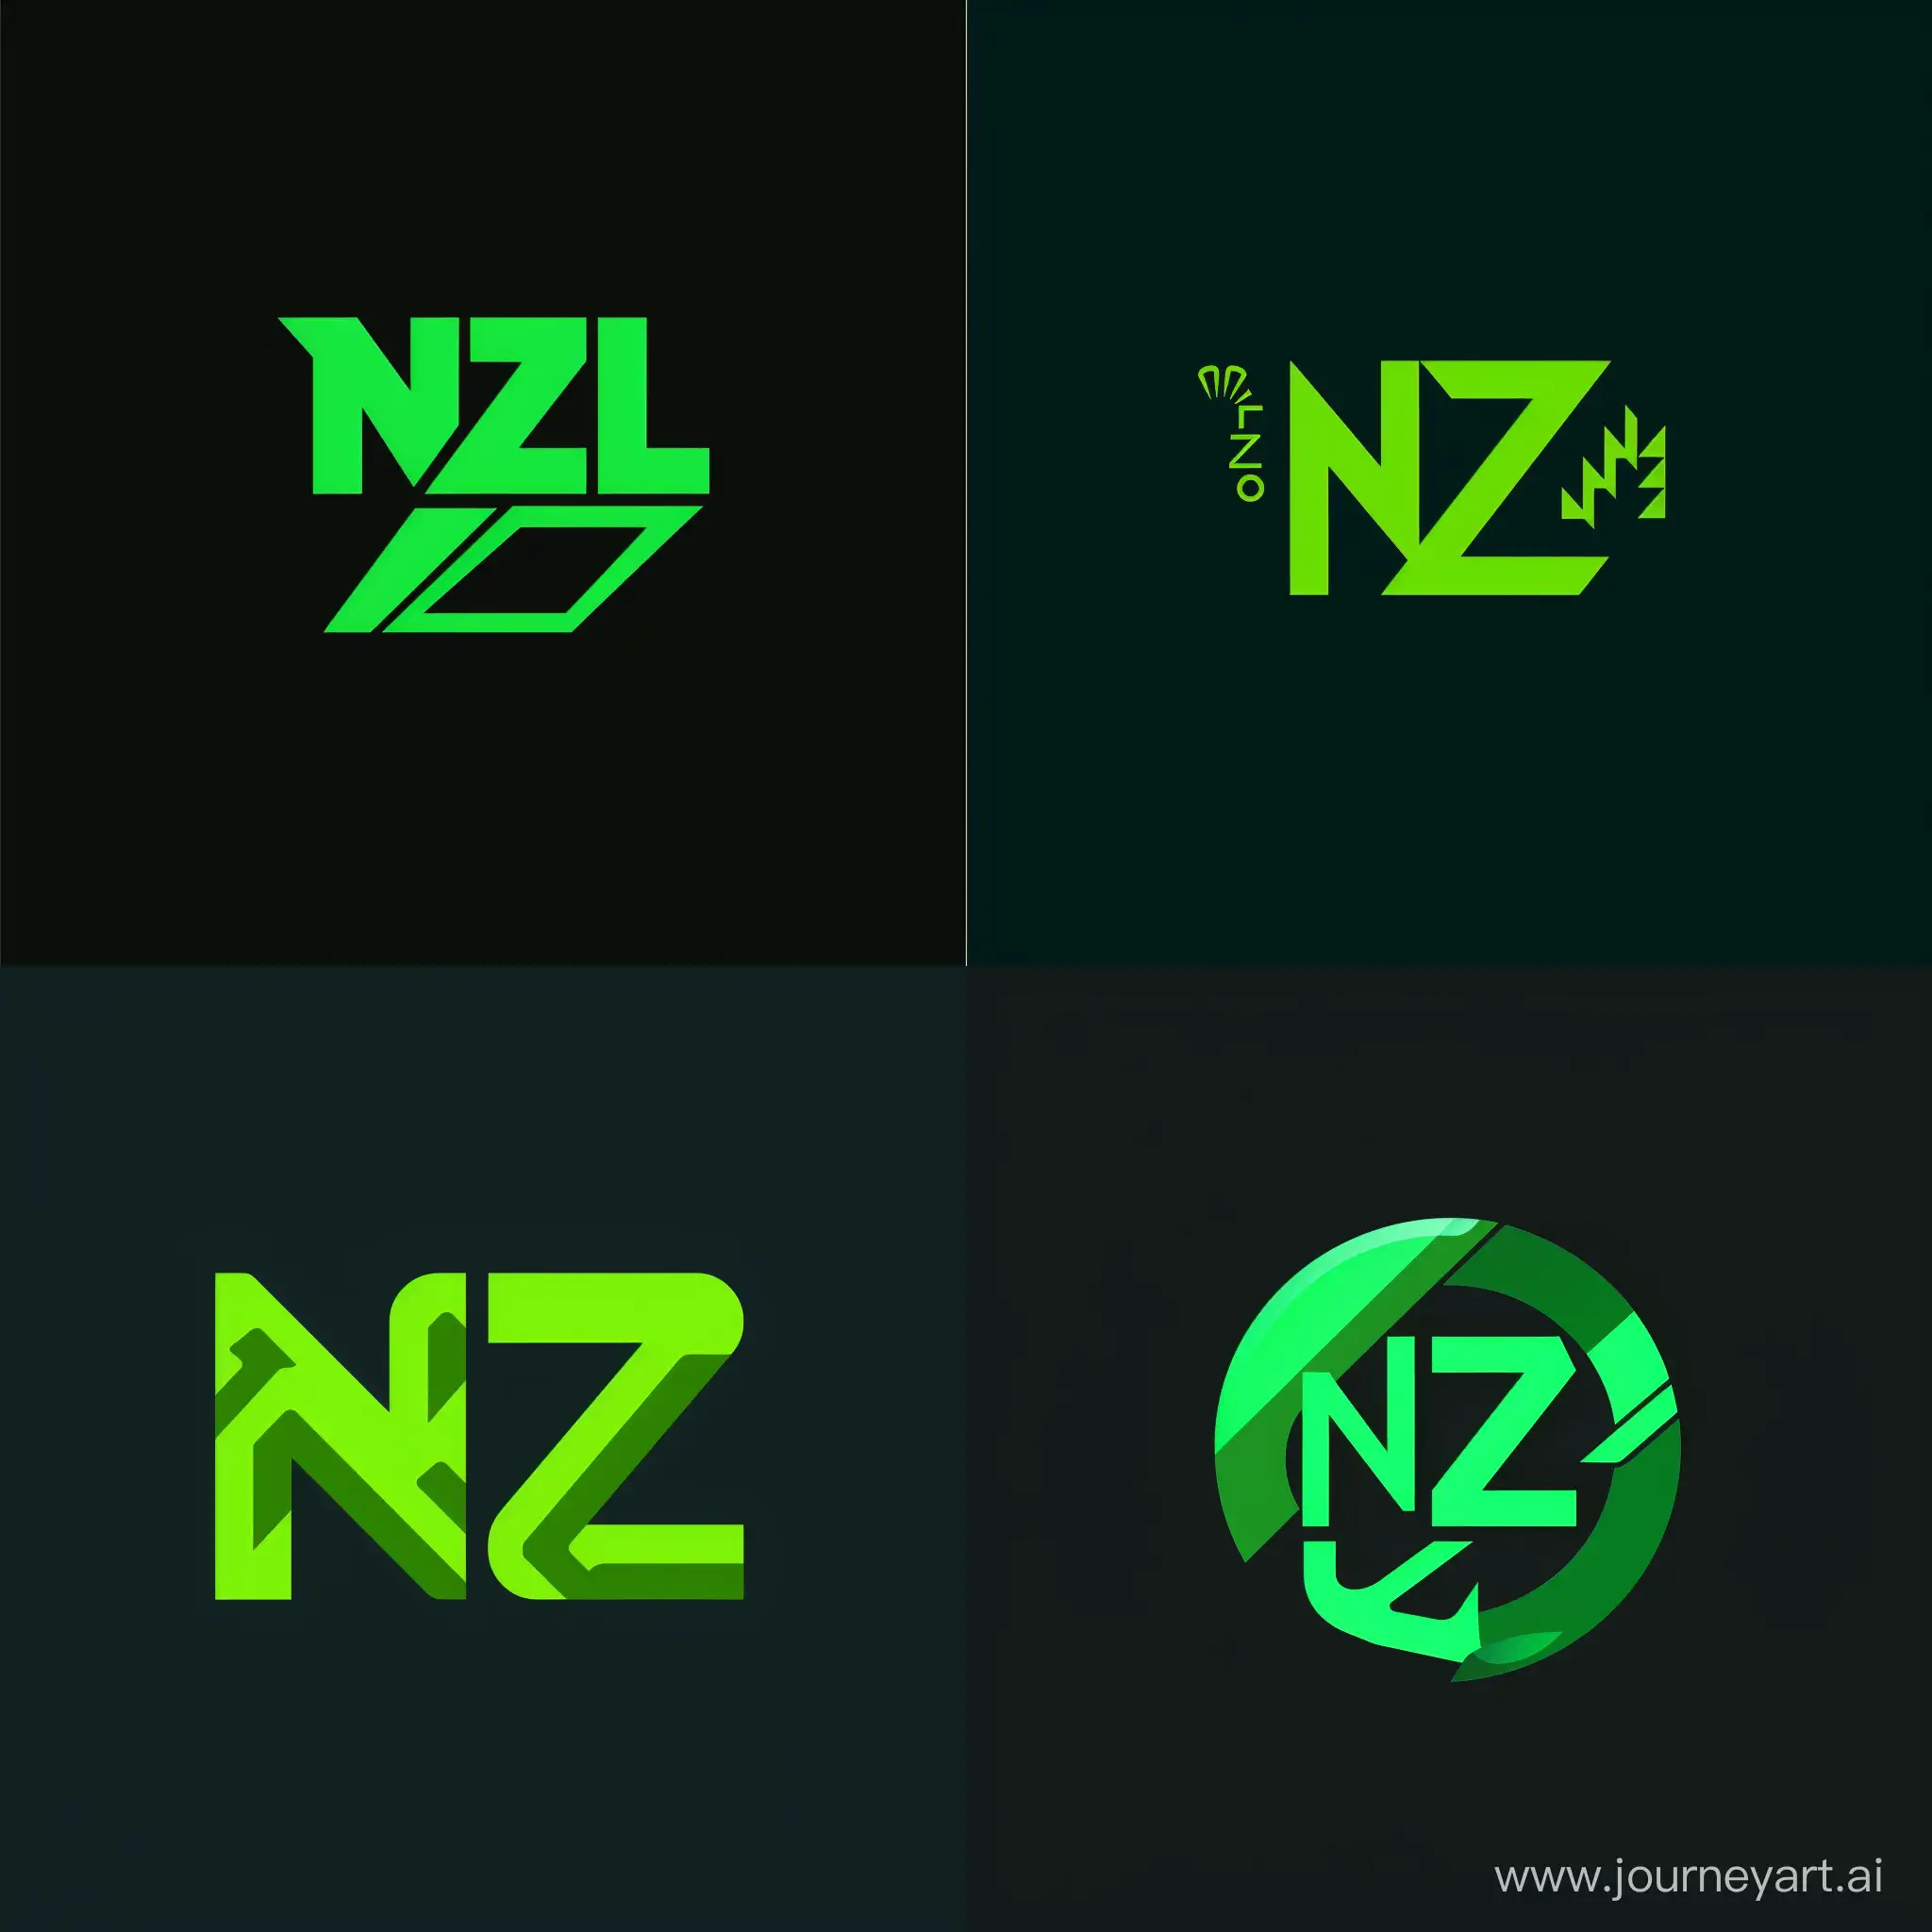 создать логотип для компании по производству вентиляционного оборудования
буквы в логотипе НЗЛ
цвет логотипа зеленый